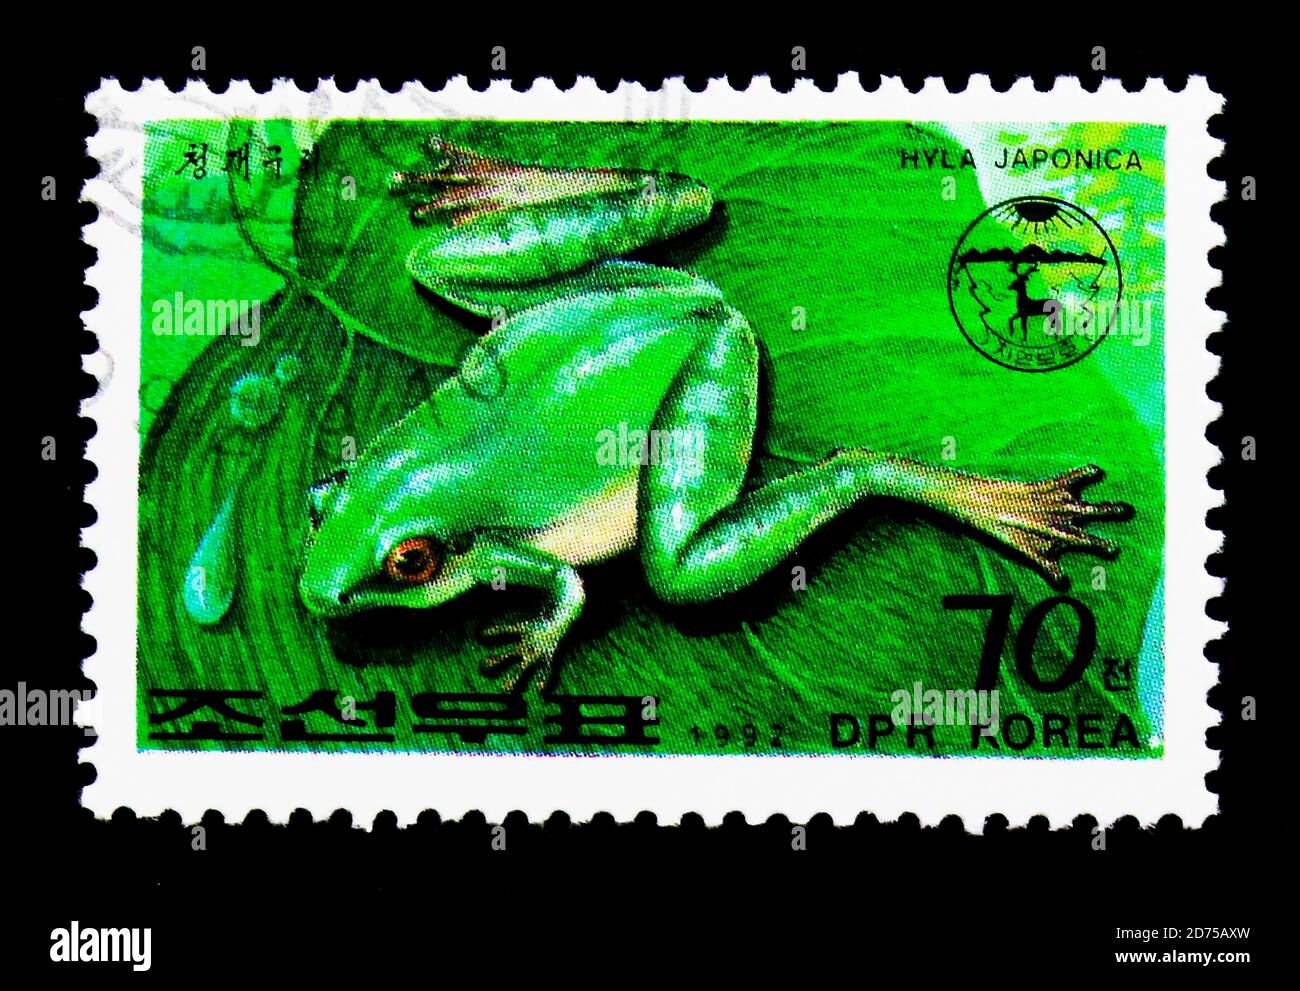 MOSCA, RUSSIA - 25 NOVEMBRE 2017: Un francobollo stampato nella repubblica Democratica popolare di Corea mostra la rana d'albero giapponese (Hyla japonica), serie, circa 19 Foto Stock